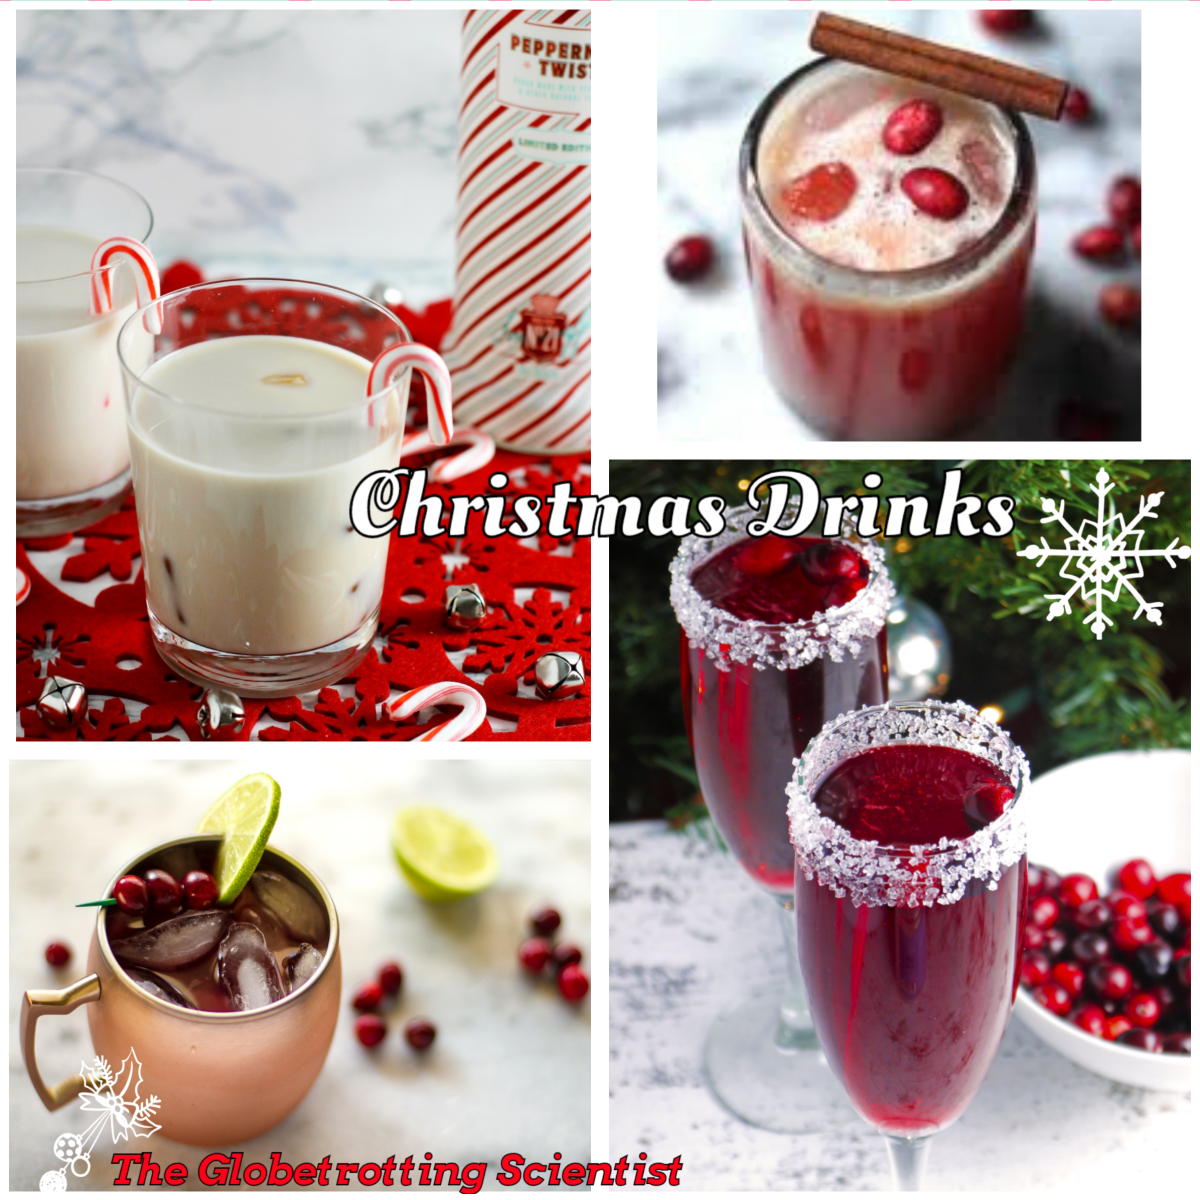 Christmas drinks